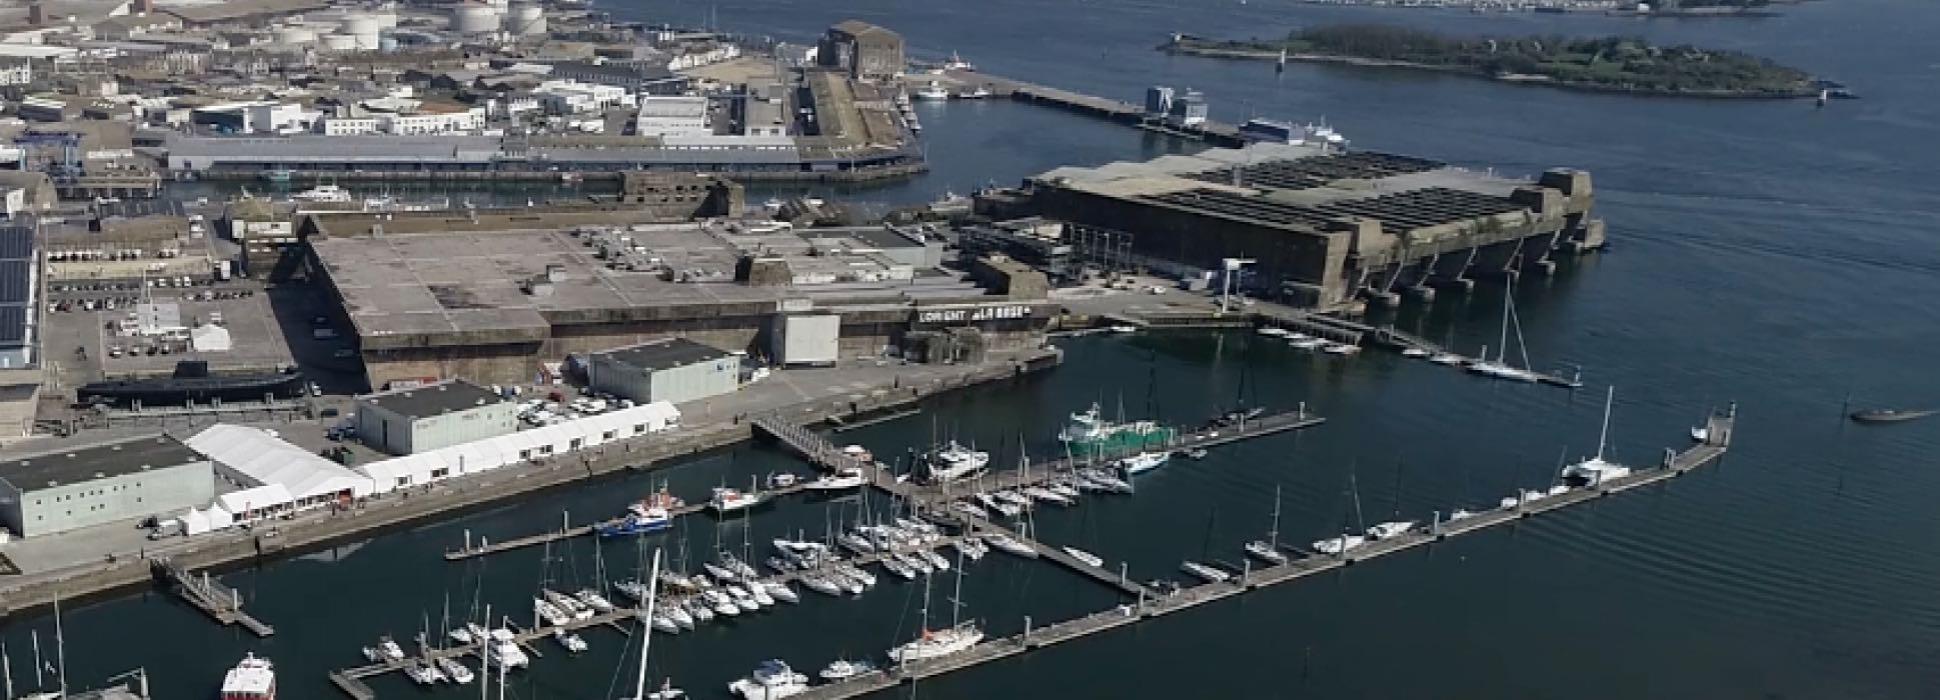 La cita de asuntos marítimos NAVEXPO pospone su quinta edición del 7 al 9 de octubre de 2020 en el puerto de Lorient La Base